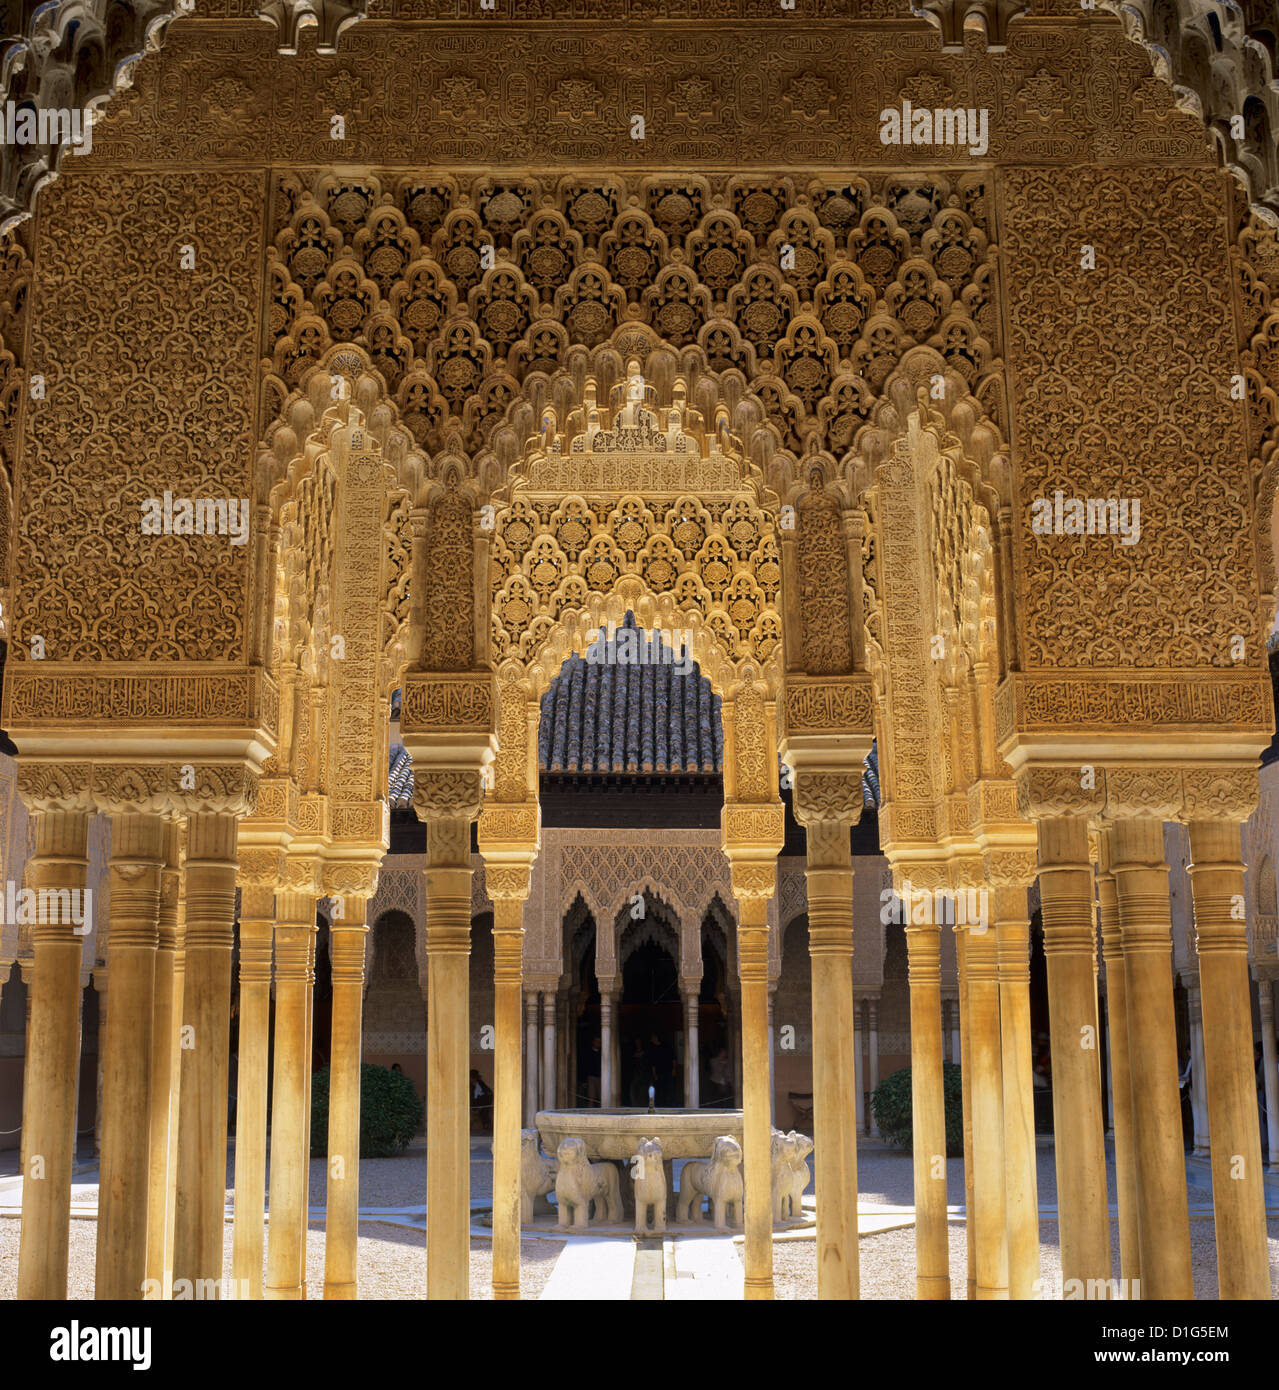 Cour des Lions, le Palais de l'Alhambra, Site du patrimoine mondial de l'UNESCO, Grenade, Andalousie, Espagne, Europe Banque D'Images